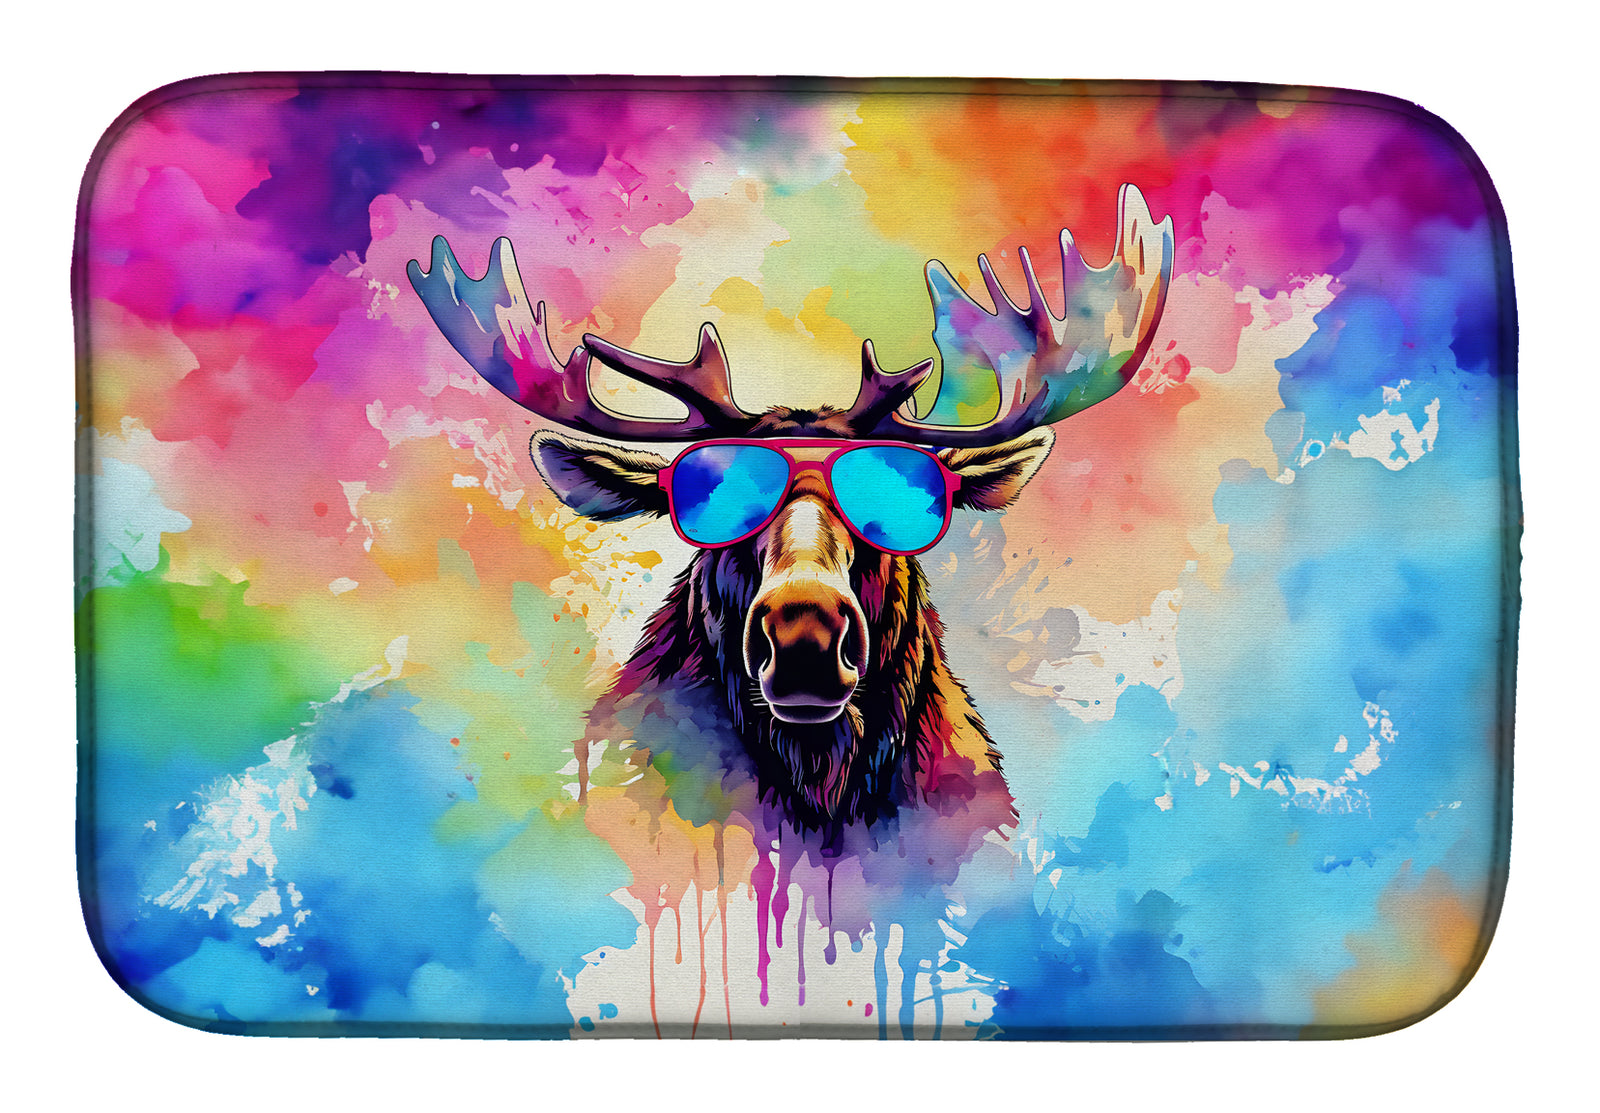 Buy this Hippie Animal Moose Dish Drying Mat